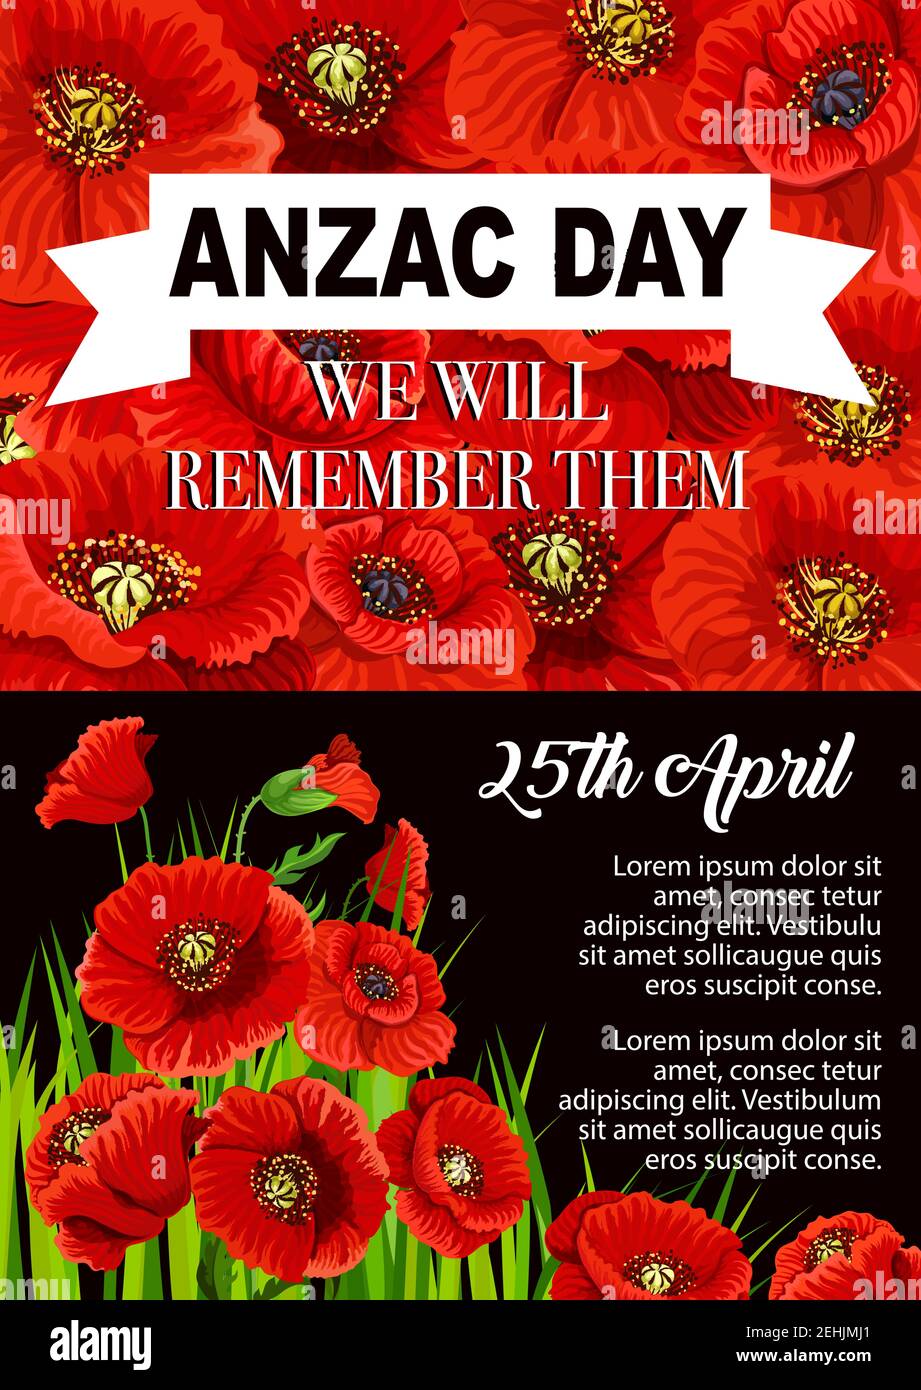 Affiche de fleurs de pavot d'Anzac Day pour le 25 avril de l'anniversaire du souvenir du corps d'armée australien et néo-zélandais. Mémorial des soldats et des vétérans de la guerre mondiale ca Illustration de Vecteur